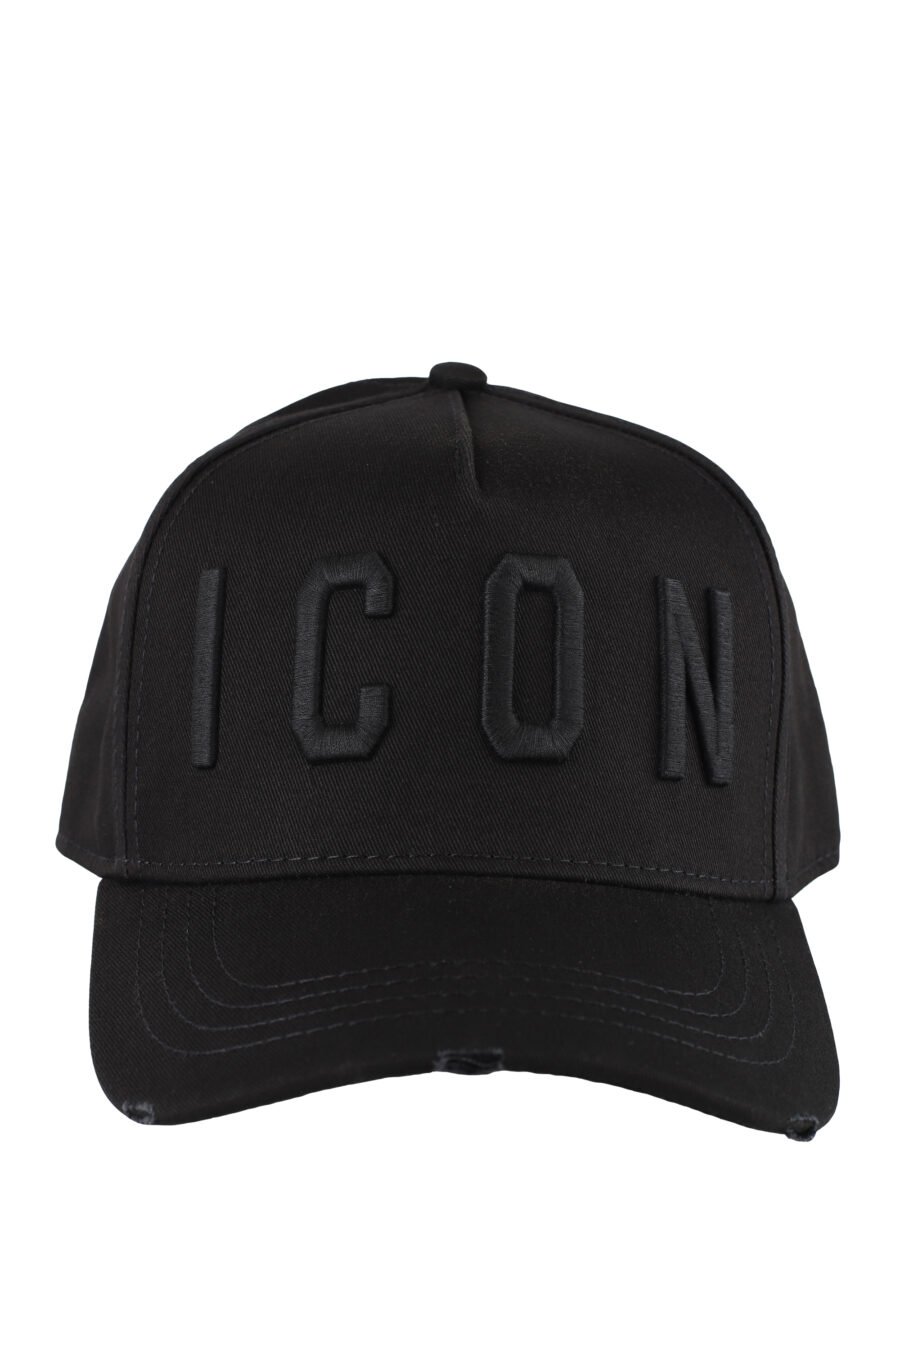 Gorra negra con logo "icon" monocromático - IMG 5164